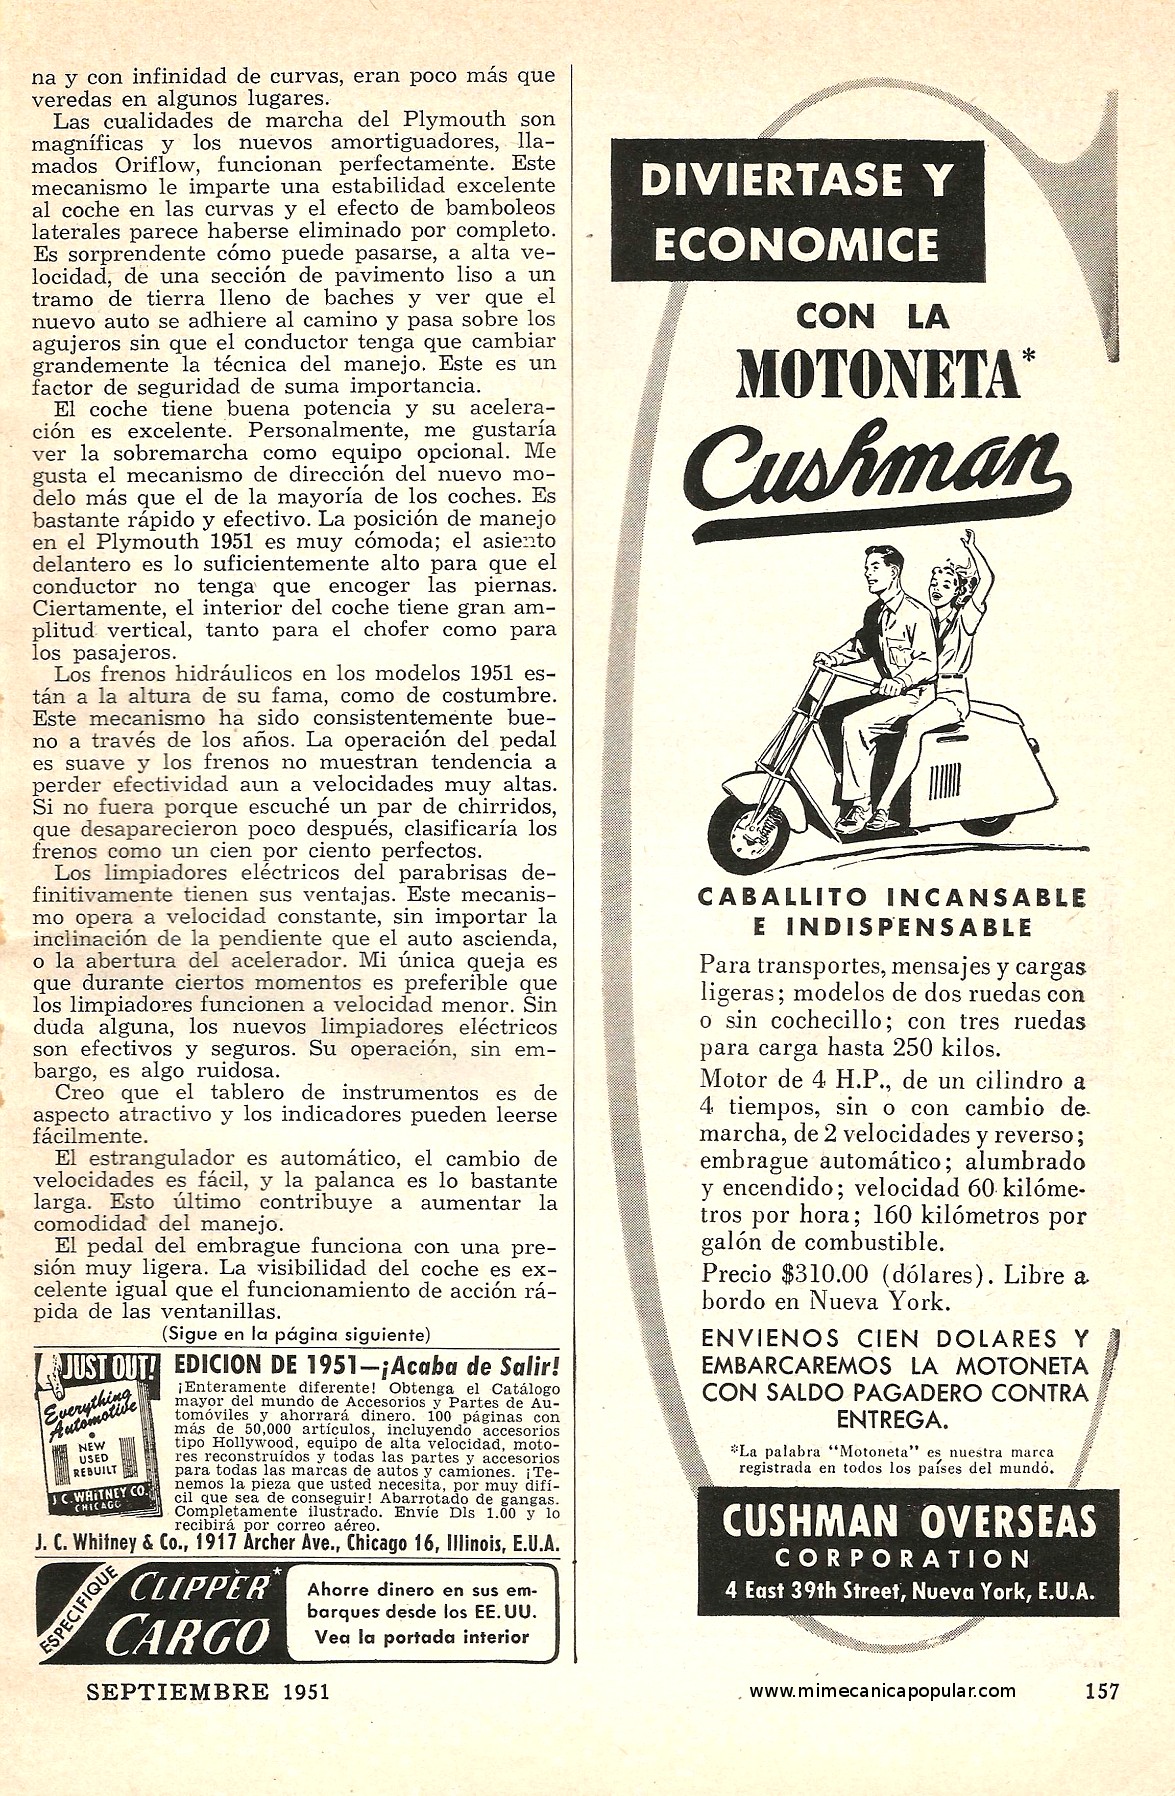 Publicidad - Motoneta Cushman - Septiembre 1951